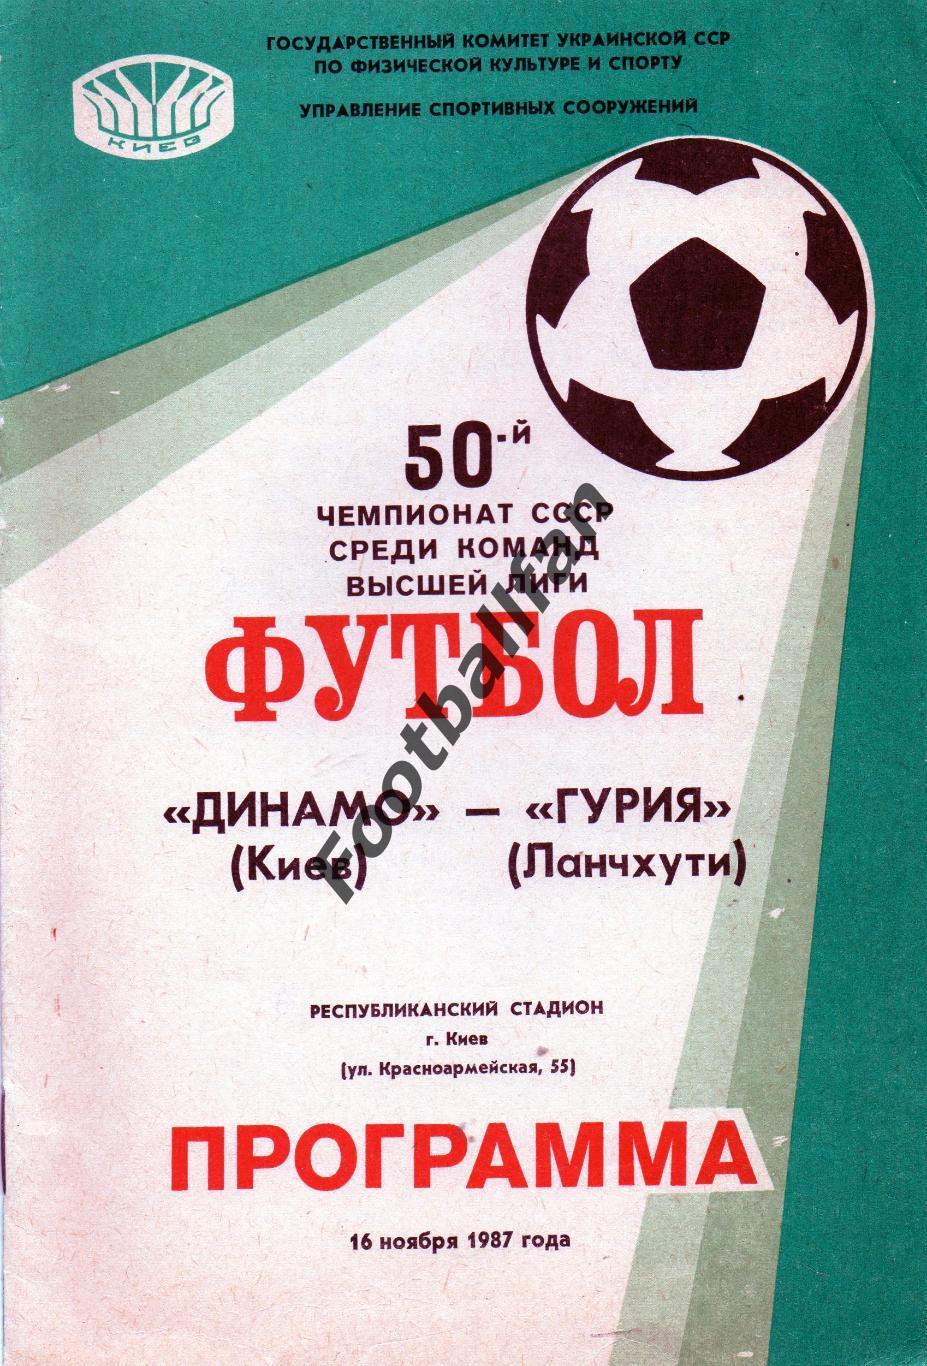 Динамо Киев - Гурия Ланчхути 16.11.1987